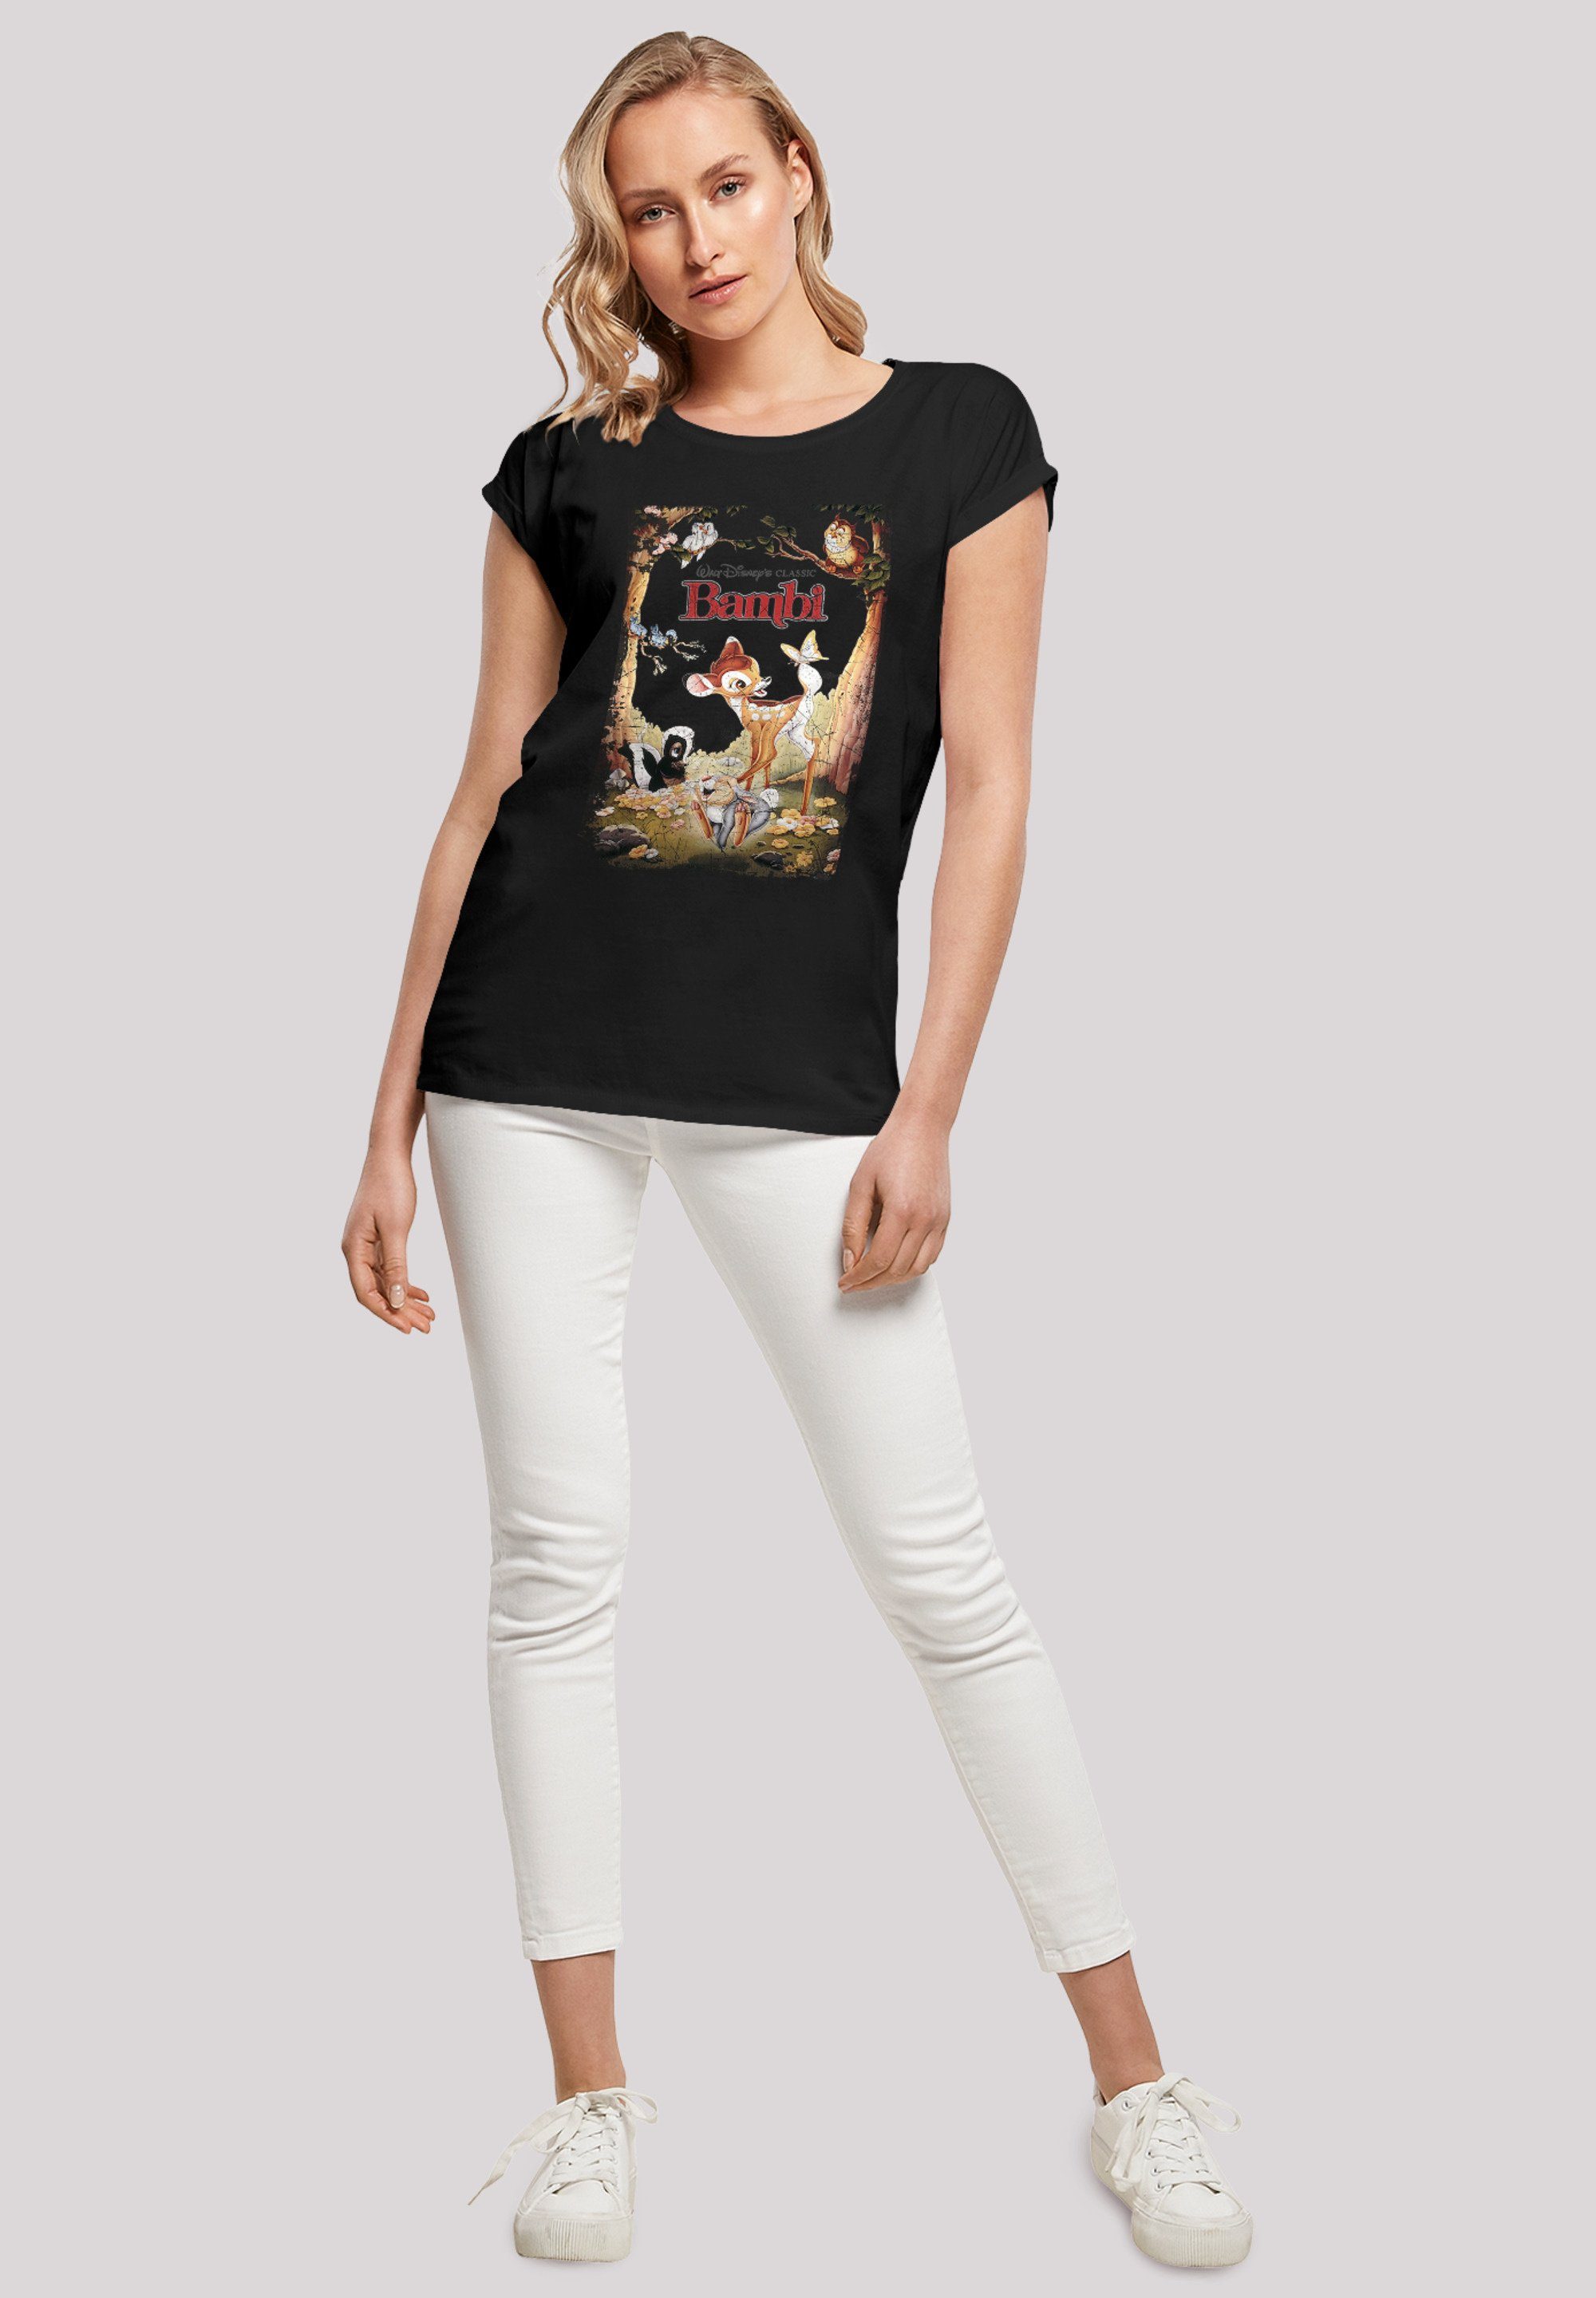 Poster T-Shirt Ärmel,Bedruckt F4NT4STIC Bambi Retro Damen,Premium Merch,Regular-Fit,Kurze Disney